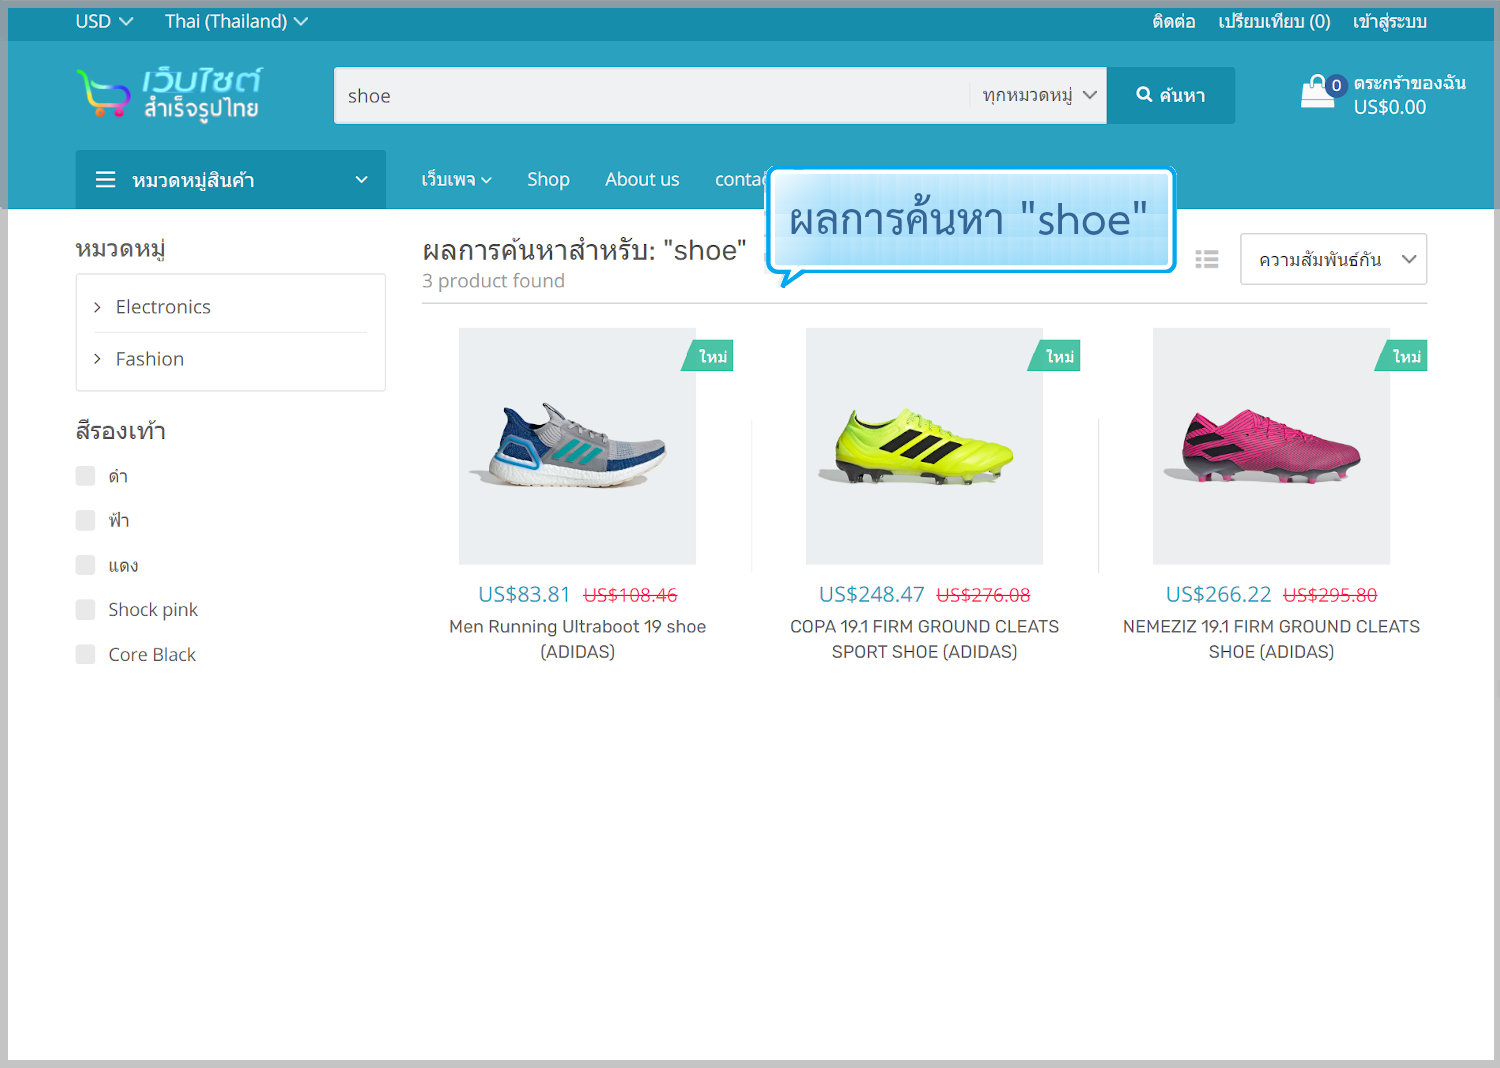 ฟีเจอร์ ecommerce ร้านออนไลน์ ขายของออนไลน์ - ค้นหารายการสินค้า (Product search) บนหน้าร้านออนไลน์- เปิดร้านออนไลน์ ขายของออนไลน์ เว็บอีคอมเมอร์ส ด้วยเว็บไซต์สำเร็จรูป Ninenic ecommerce